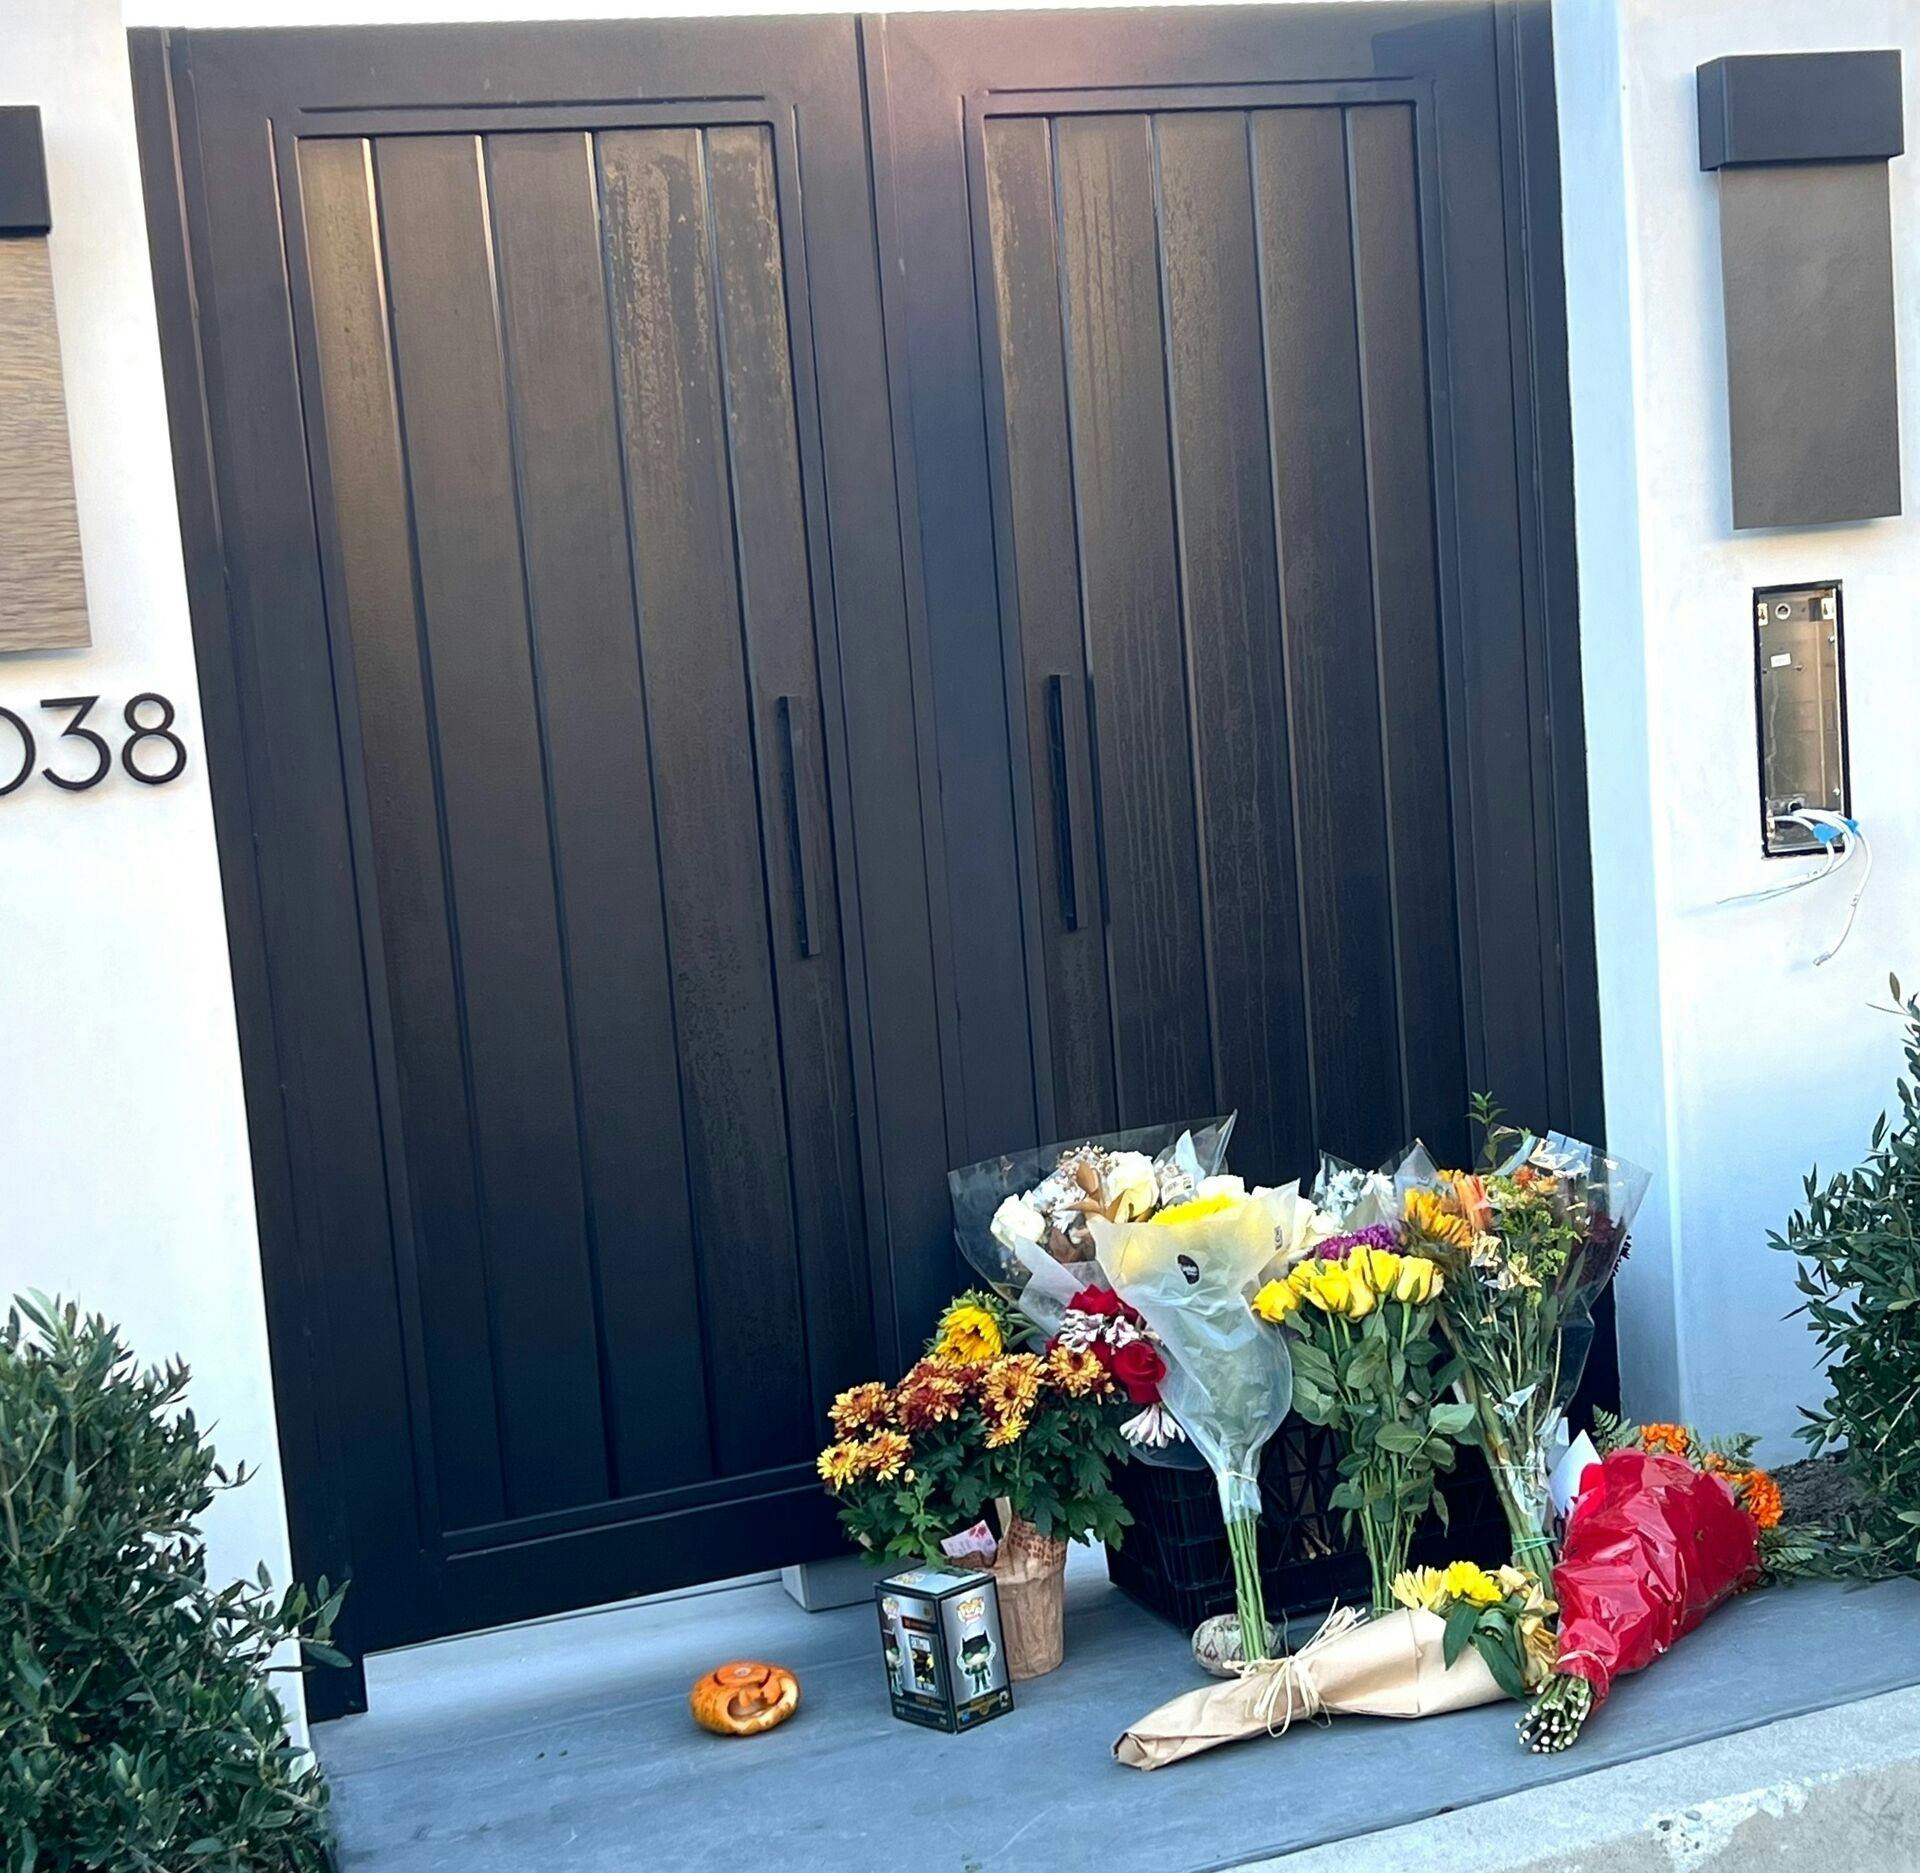 Blomster pryder hoveddøren ind til Matthew Perrys hjem.